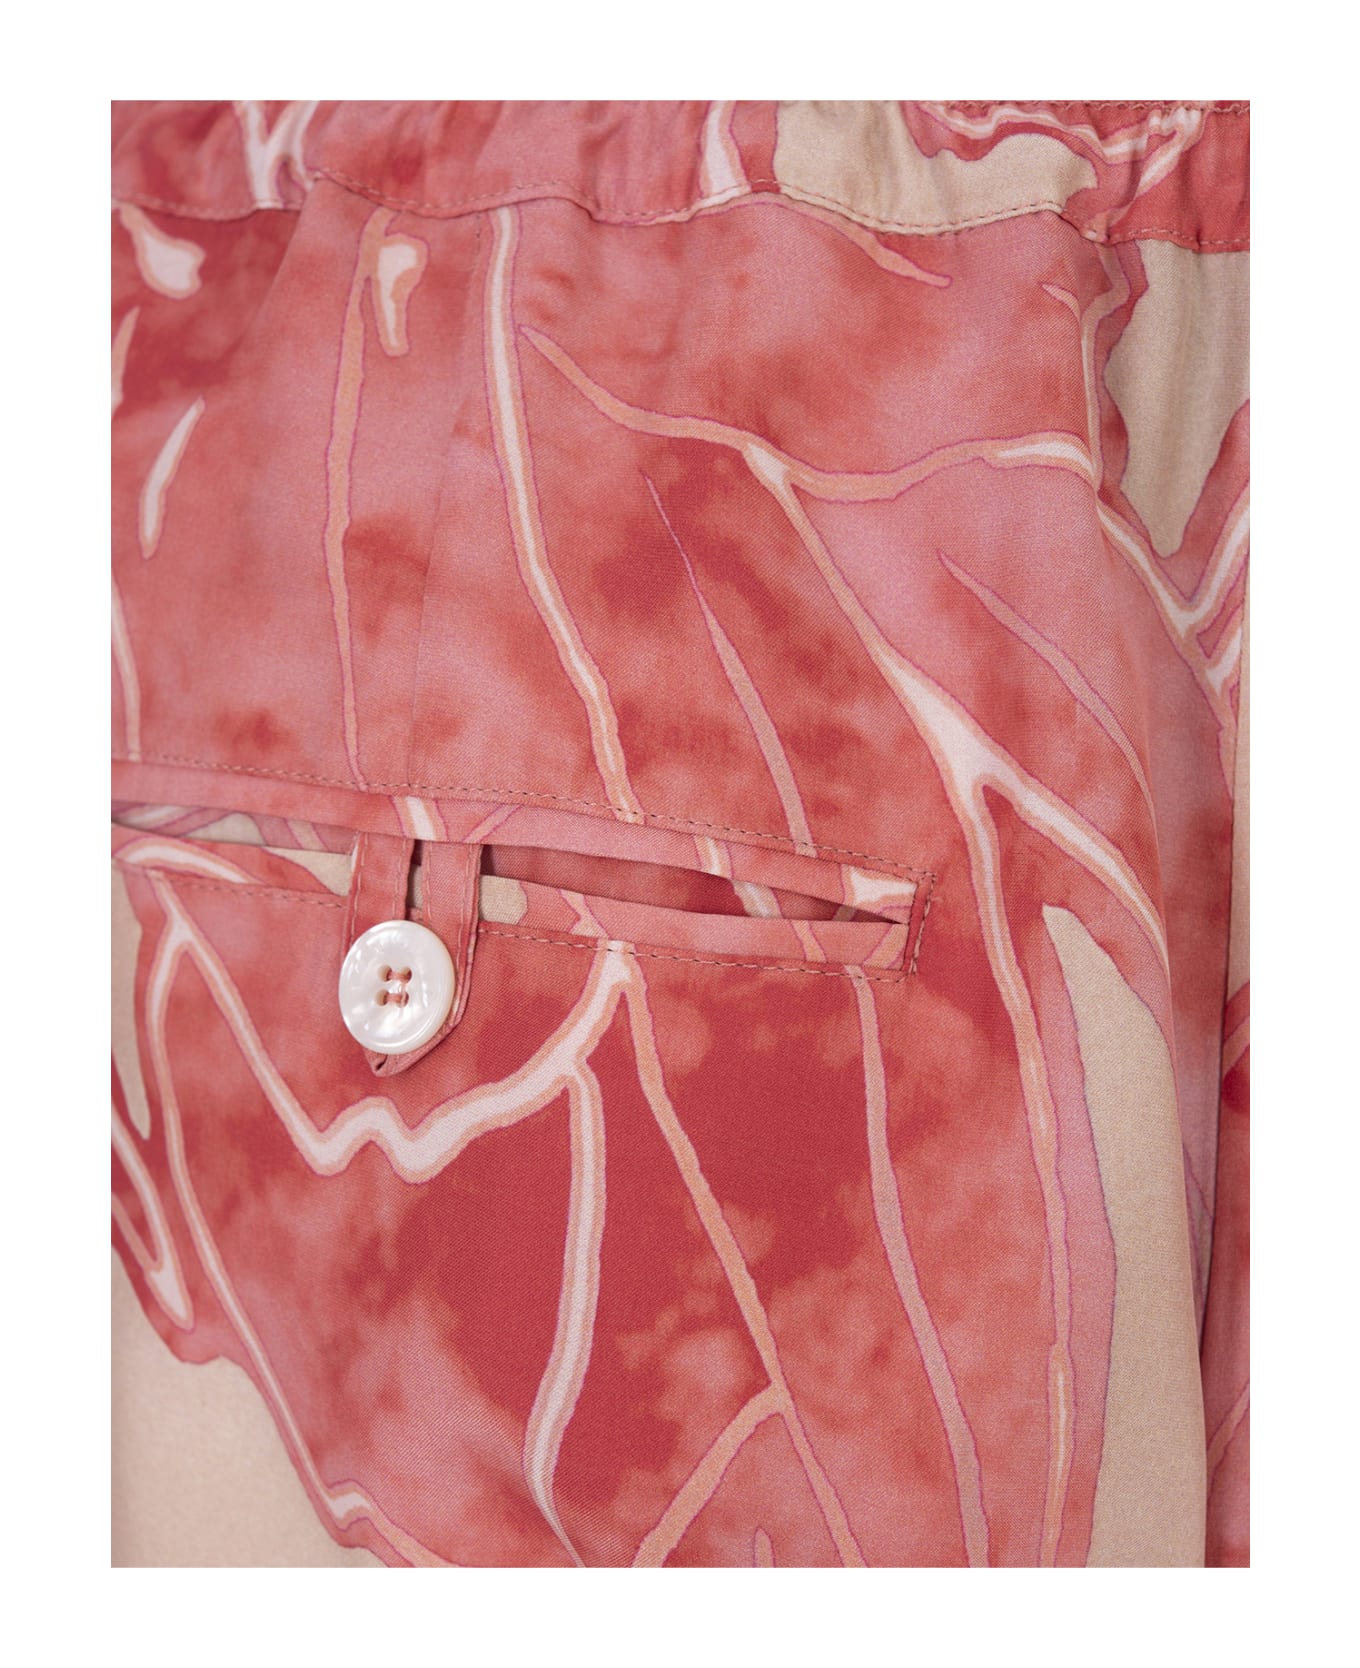 Kiton Printed Silk Drawstring Trousers In Pink - Pink